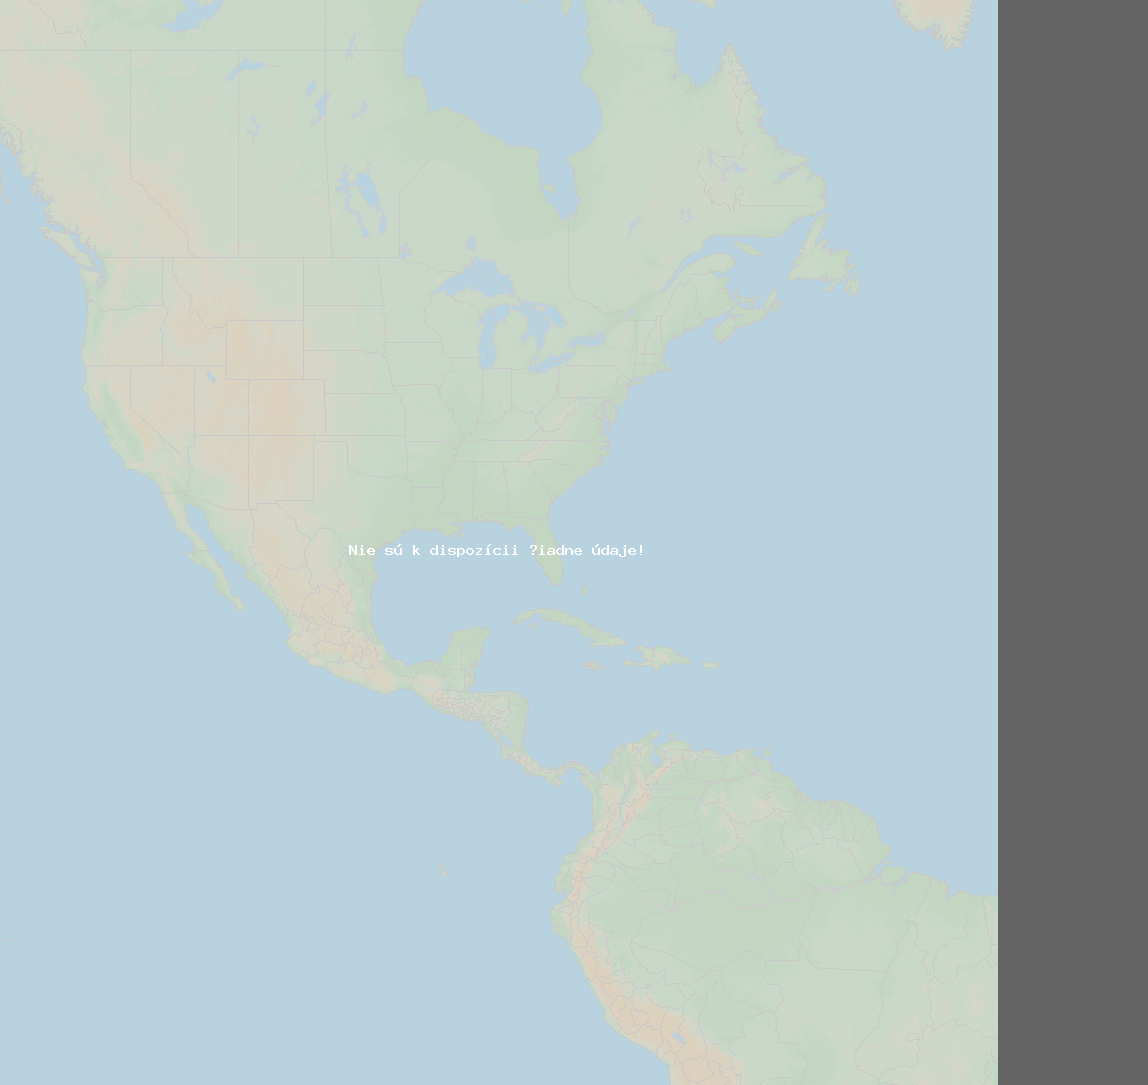 Pomer bleskov (Stanica San Luis Obispo) North America 2024 Január